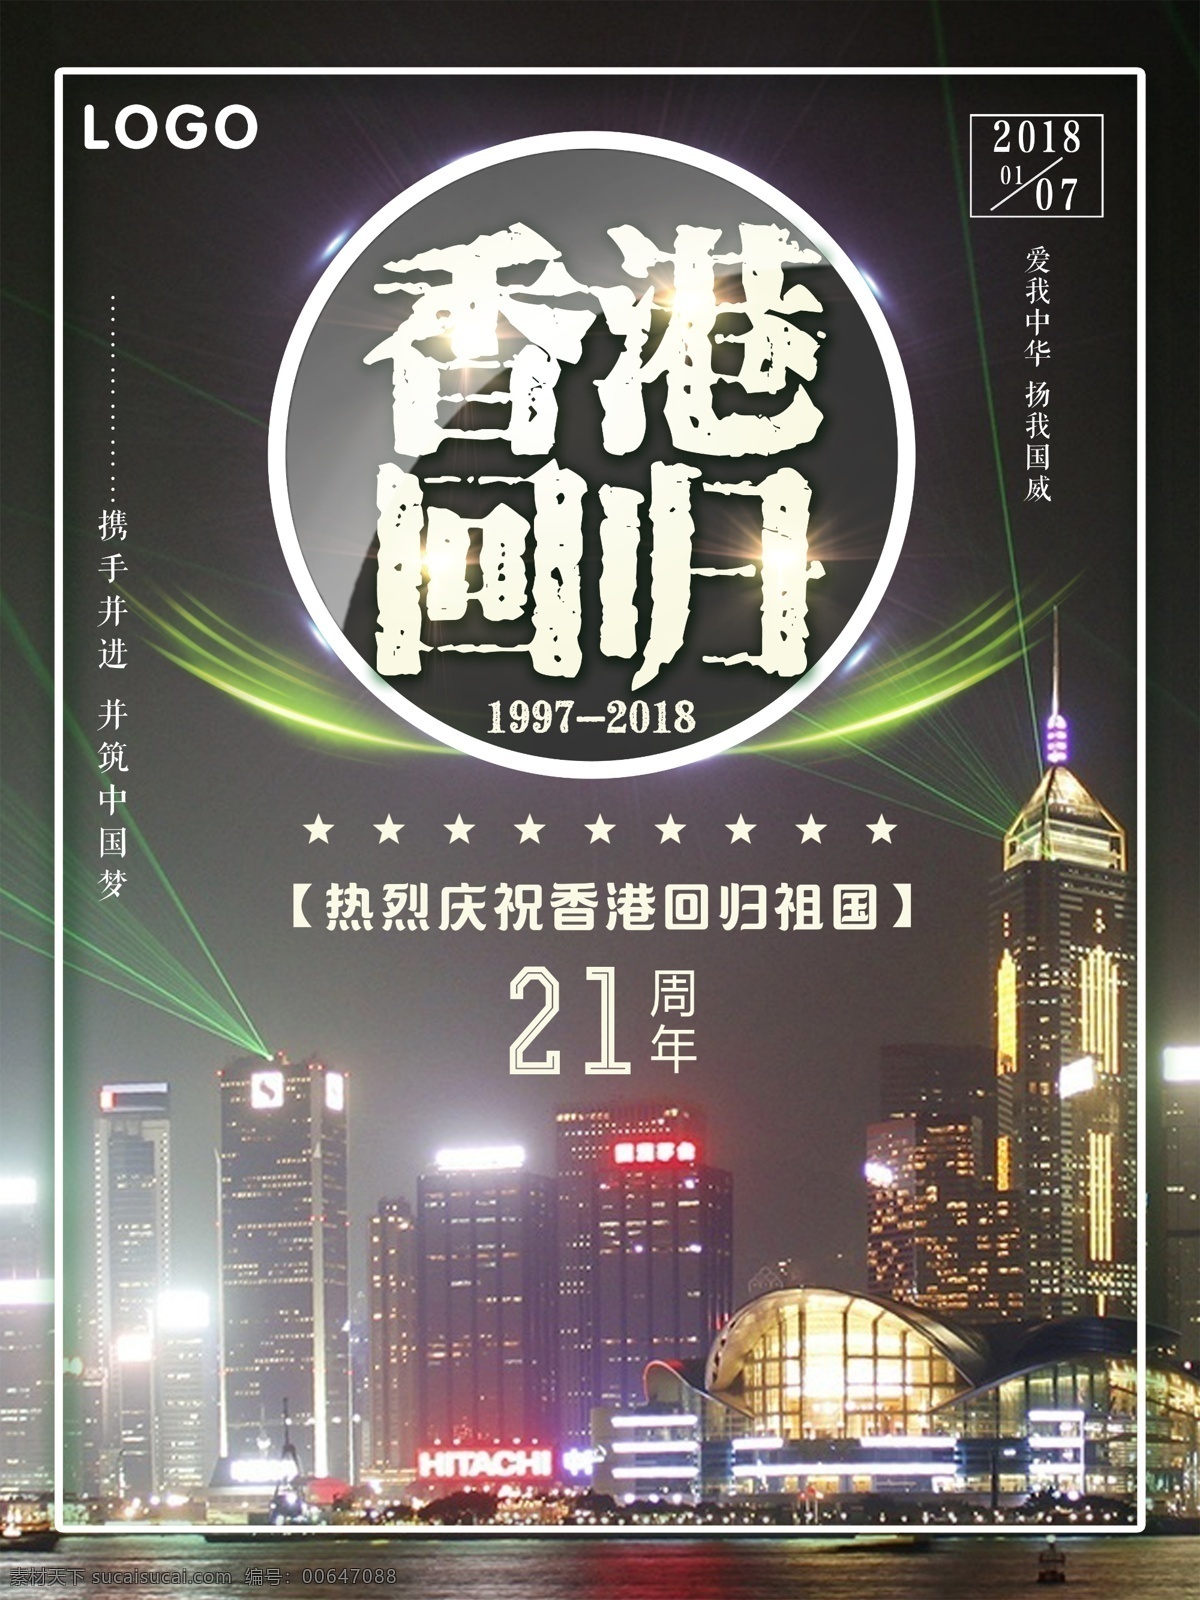 香港 回归 祖国 周年 宣传海报 香港回归 维多利亚港湾 纪念日 21周年 纪念香港回归 庆祝香港回归 香港回归祖国 二十一周年